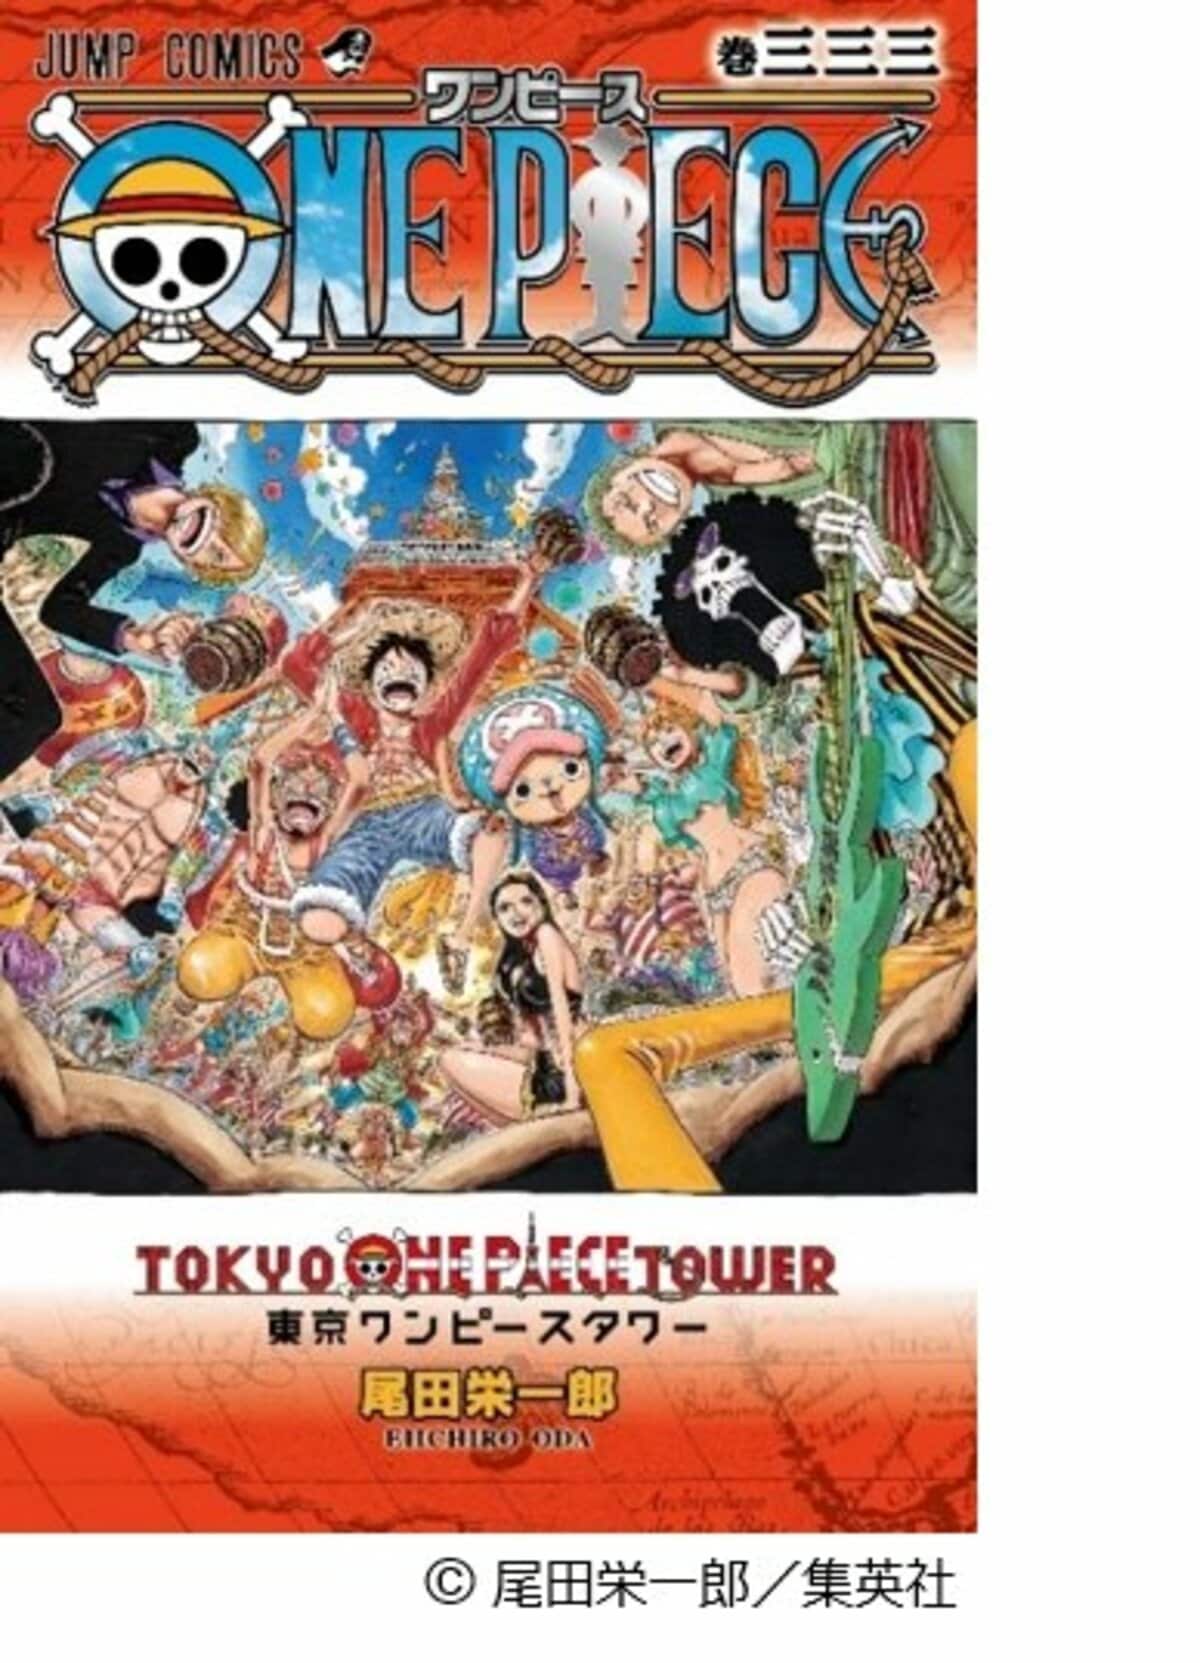 東京ワンピースタワー3周年記念 One Piece コミックス 巻三三三の発行が決定 ニュース Abema Times